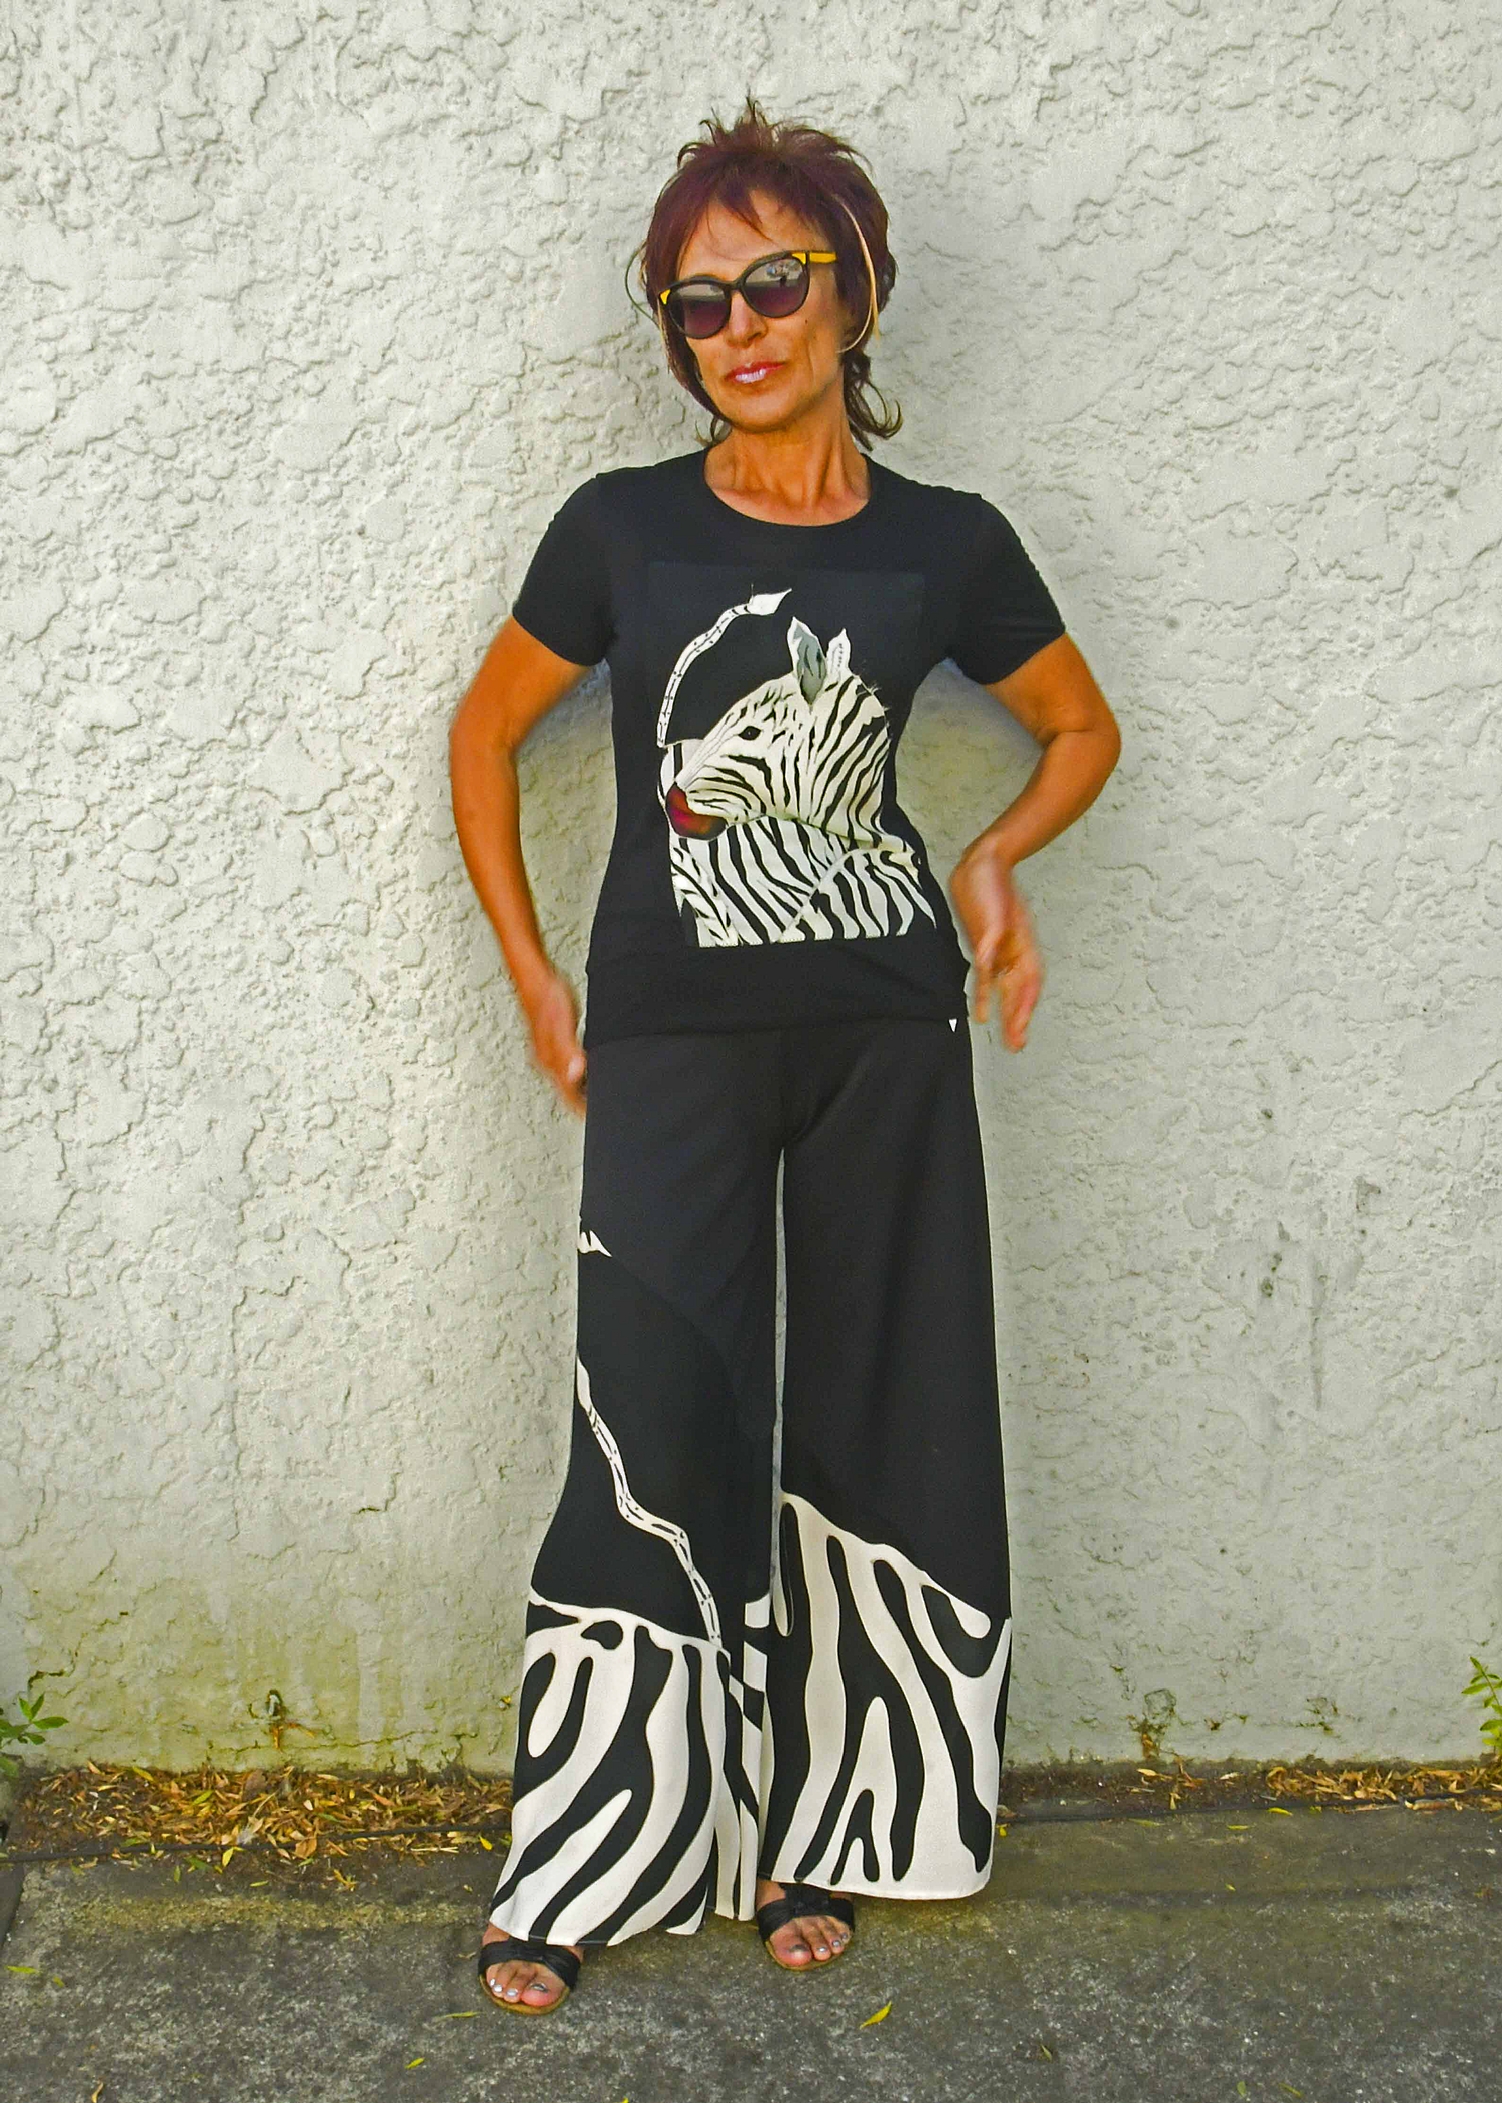 Zebra T-shirt and pants